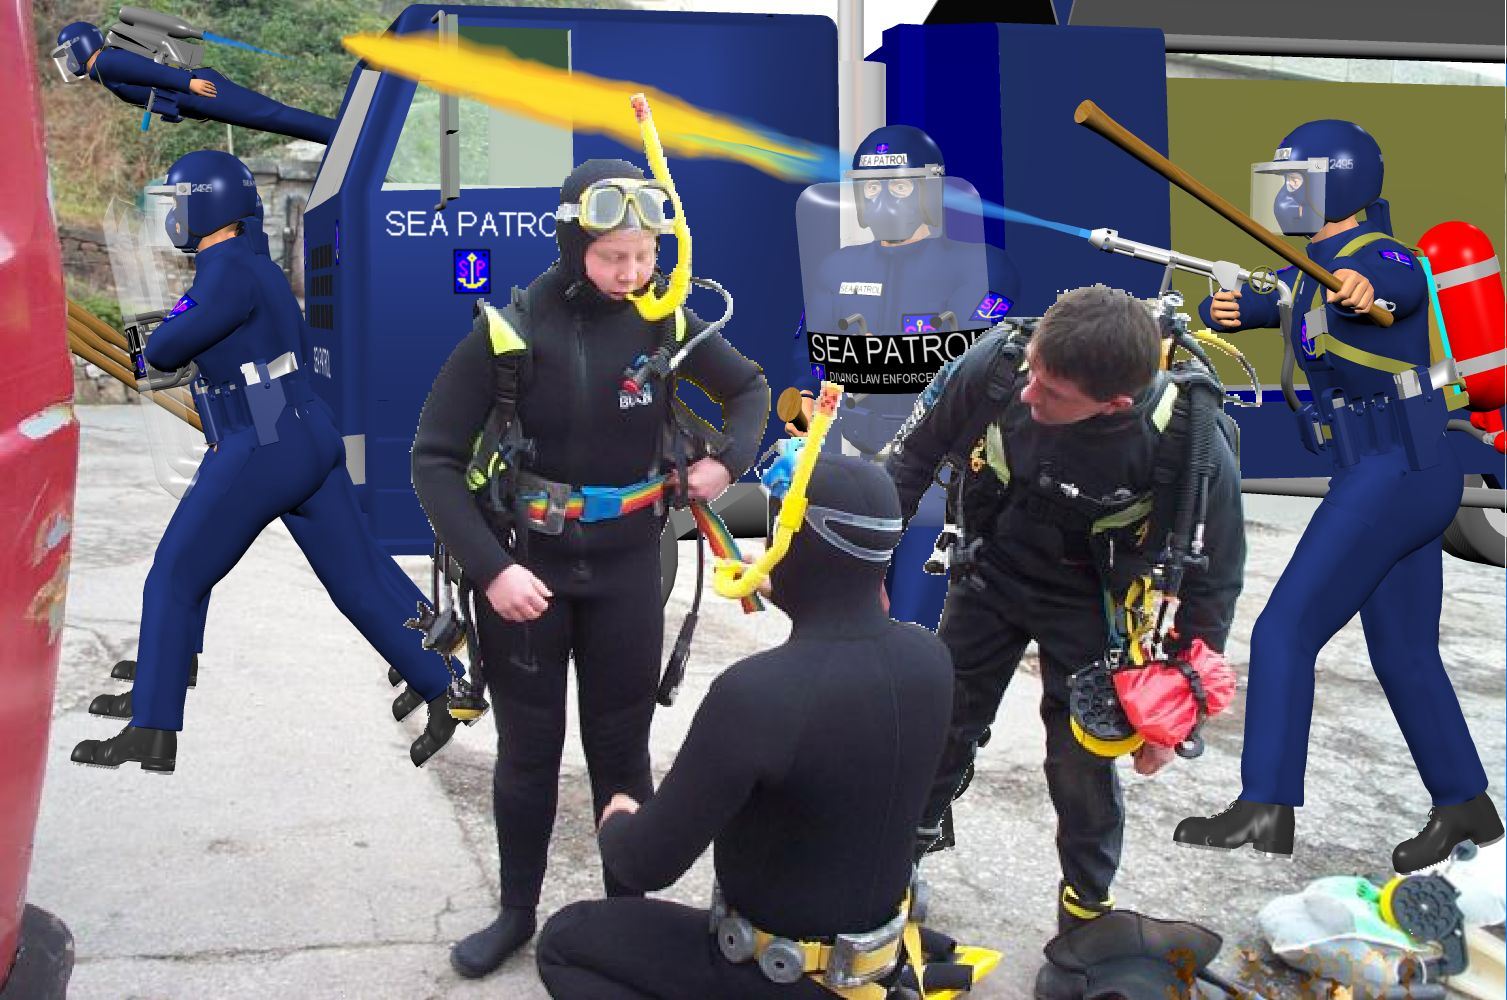 Sea Patrol actions against uncontrolled sport scuba divers picture